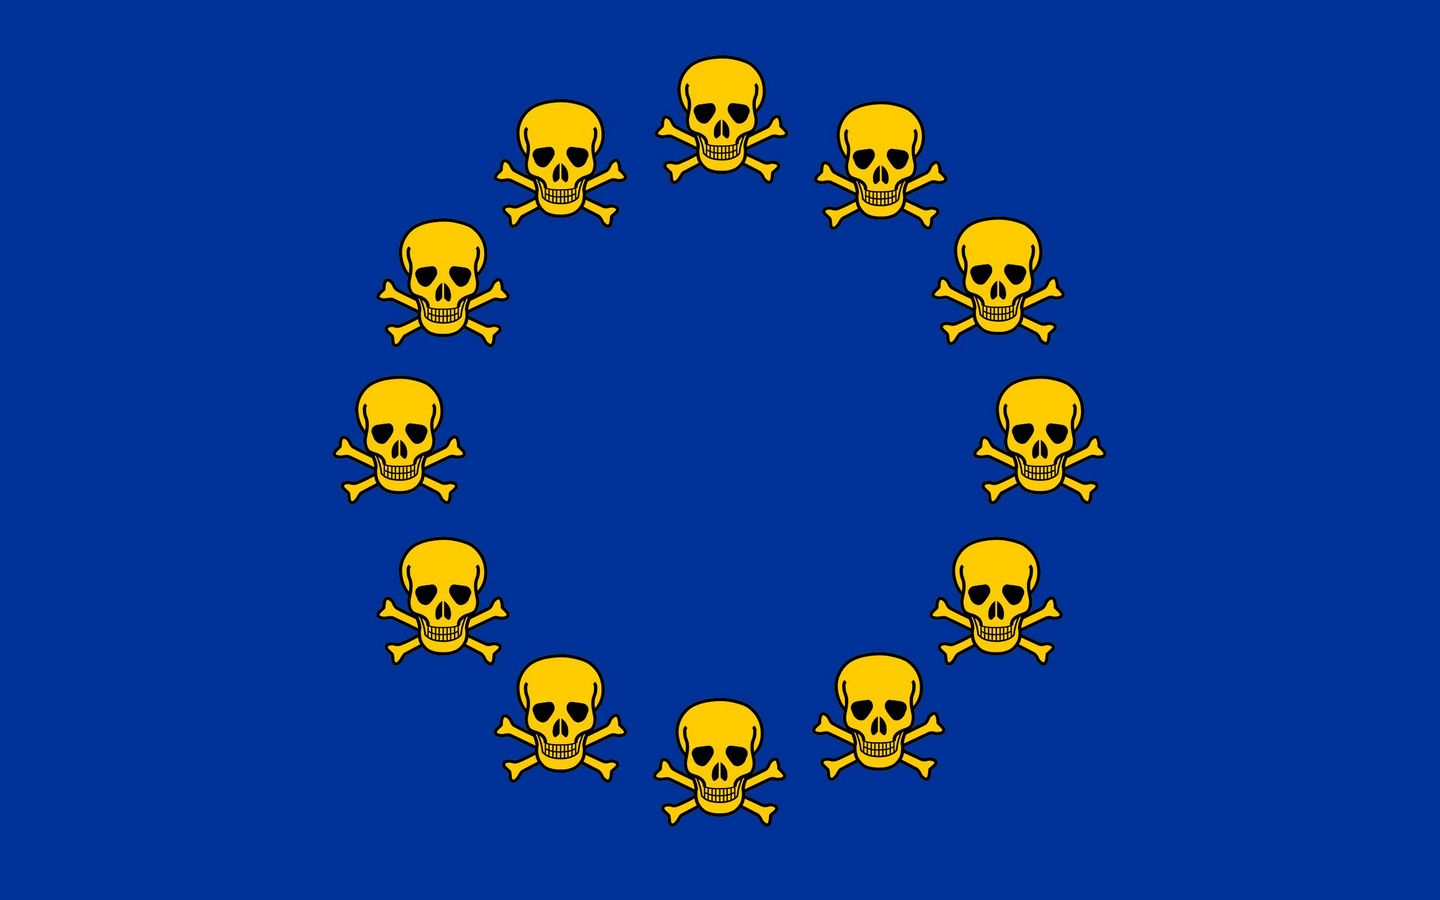 Evropská unie 1440x900. Tapeta, wallpaper, obrázek zdarma ke stažení